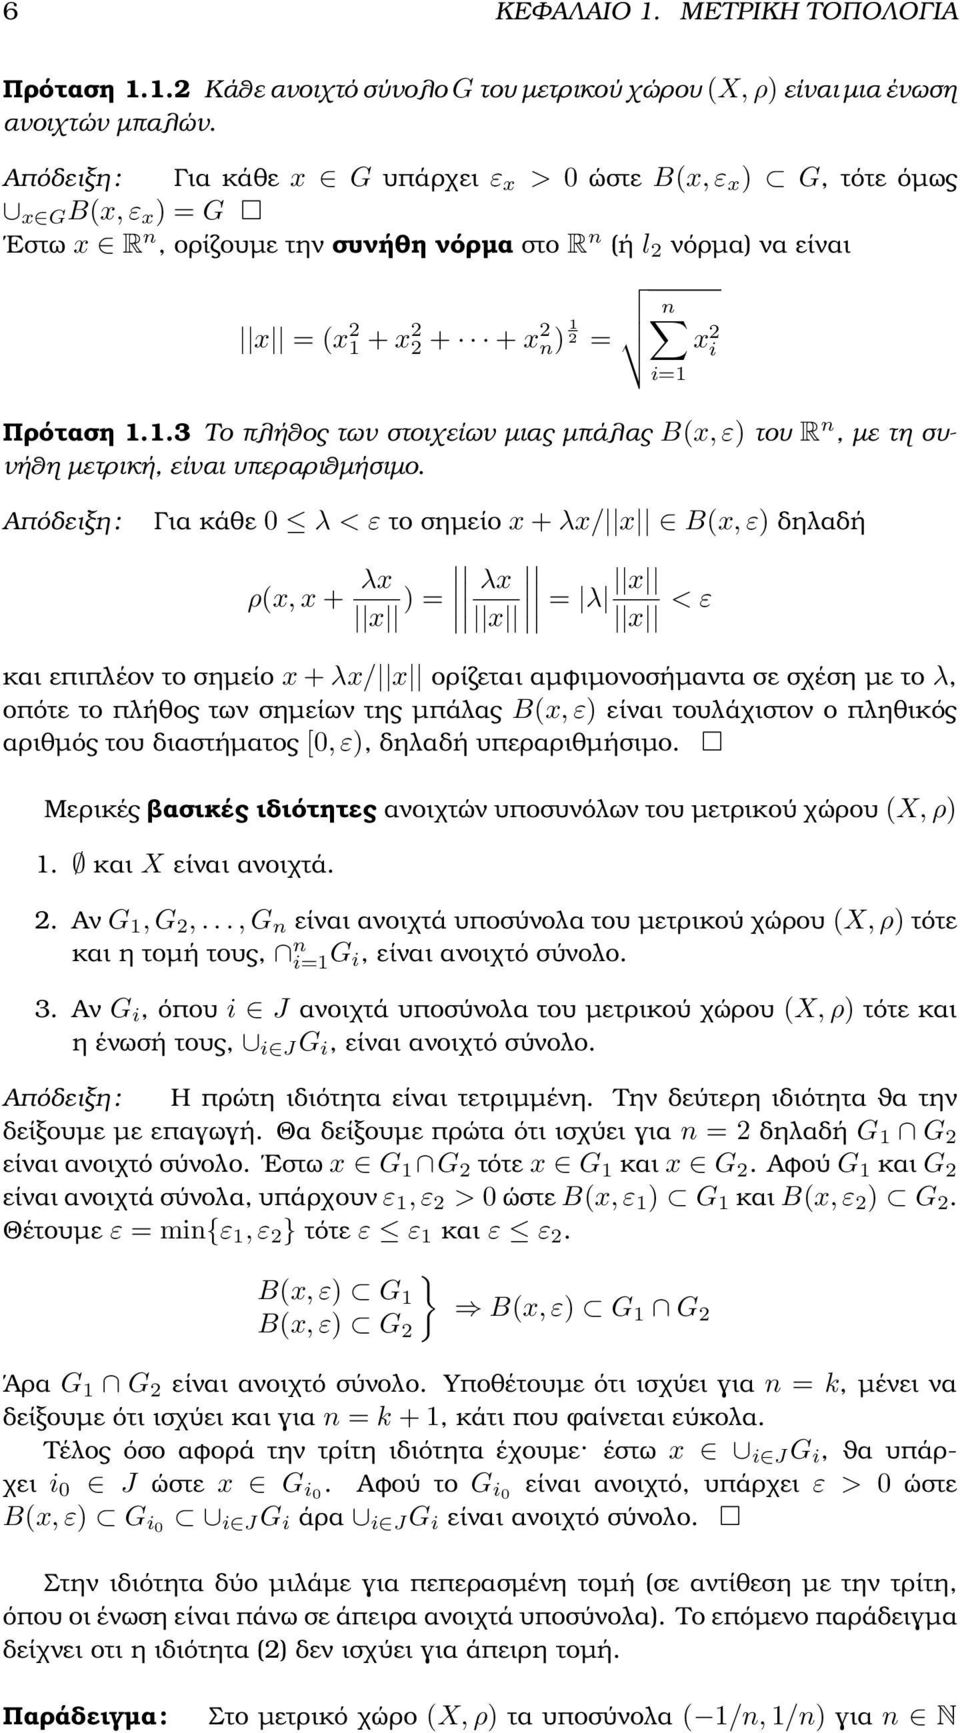 Πρόταση 1.1.3 Το πλήθος των στοιχείων µιας µπάλας B(x, ε) του R n, µε τη συνήθη µετρική, είναι υπεραριθµήσιµο.